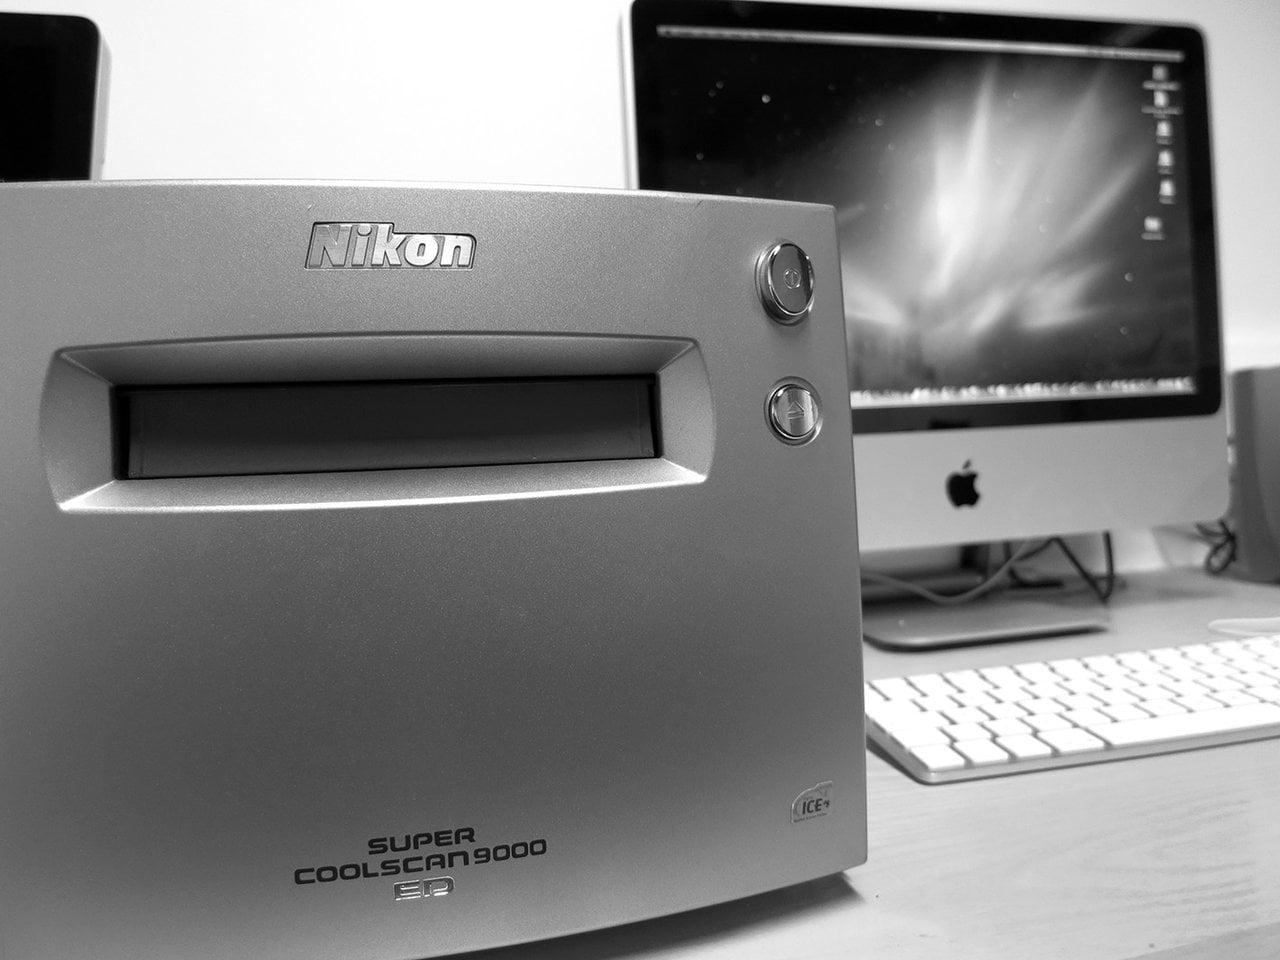 Overbevisende kage bønner How to use a Nikon 9000 scanner on Vimeo